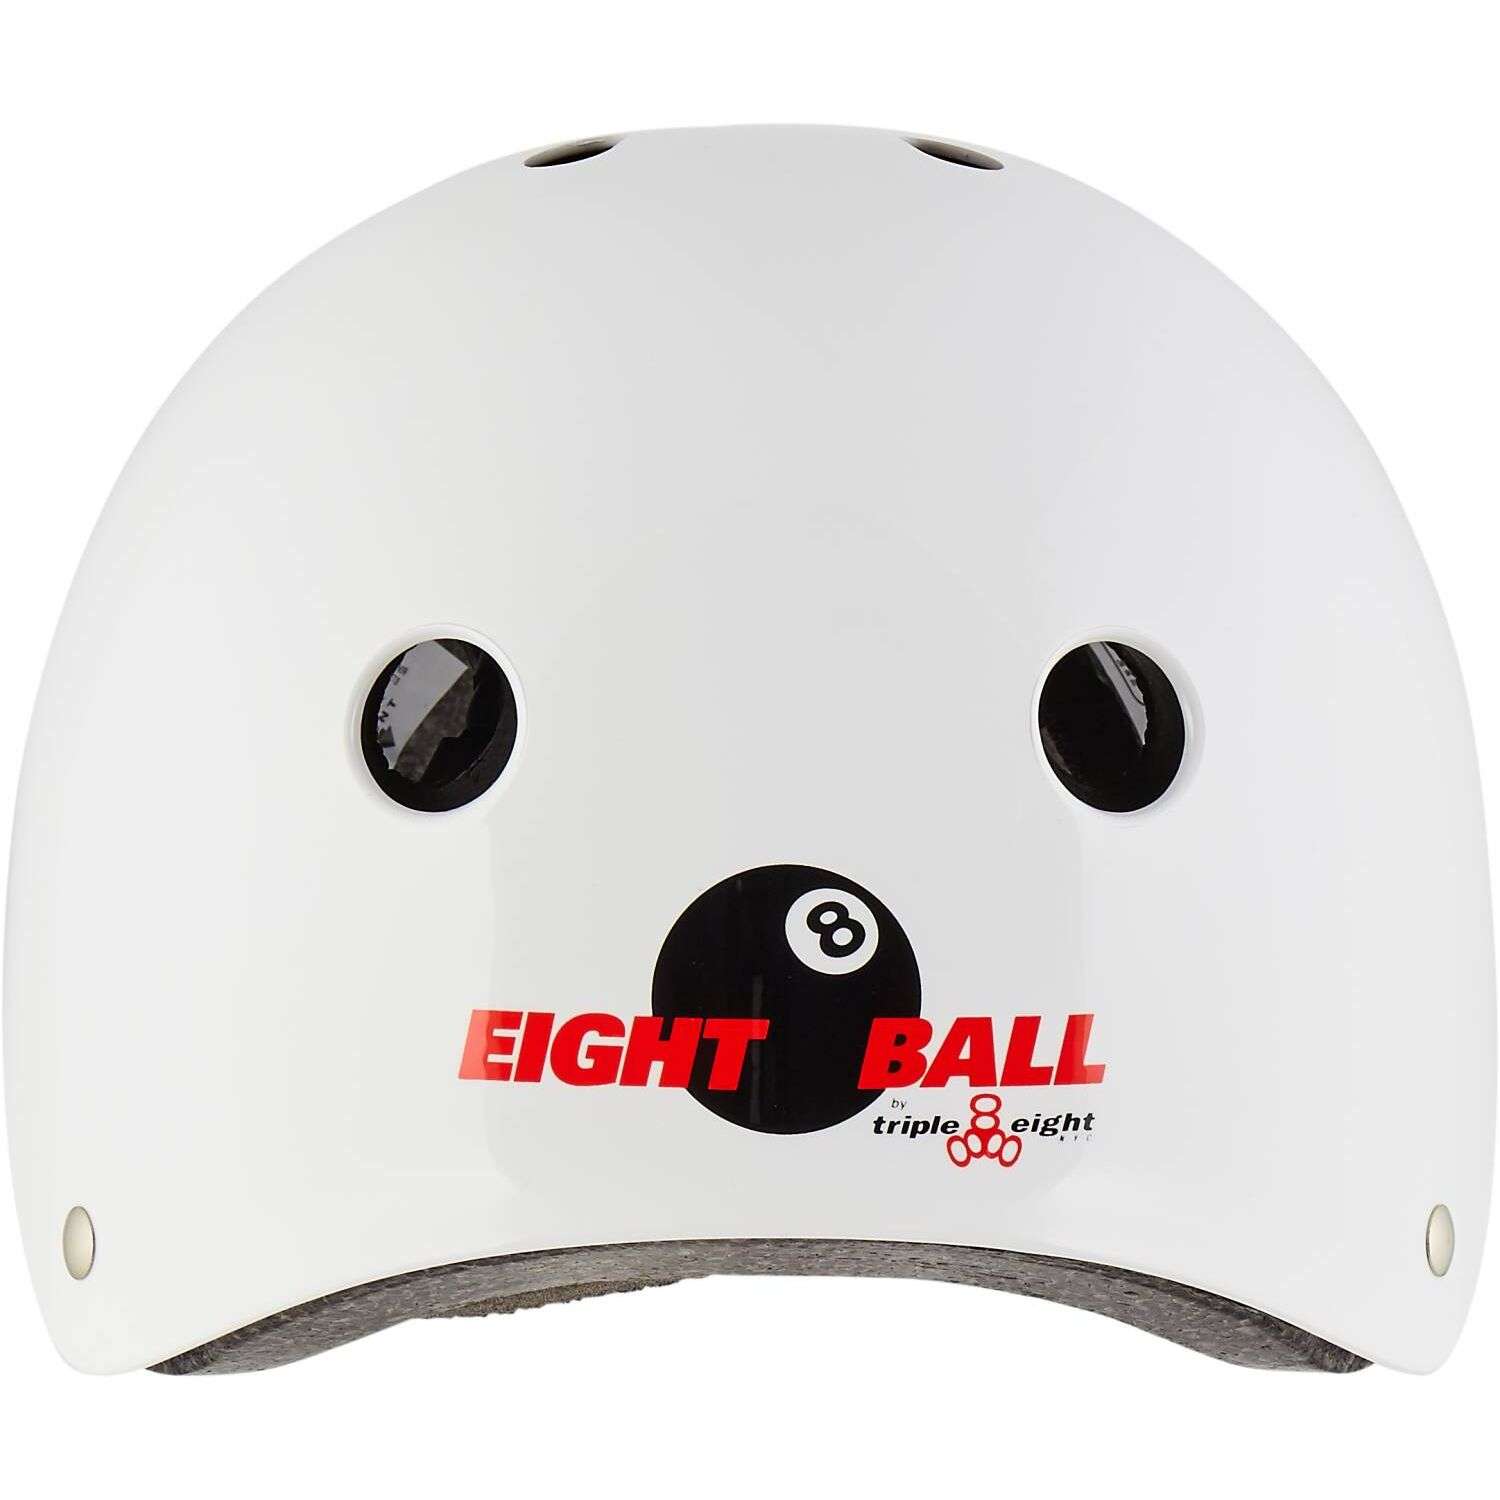 Шлем защитный спортивный Eight Ball детский белый размер L возраст 8+ обхват головы 52-56 см - фото 2